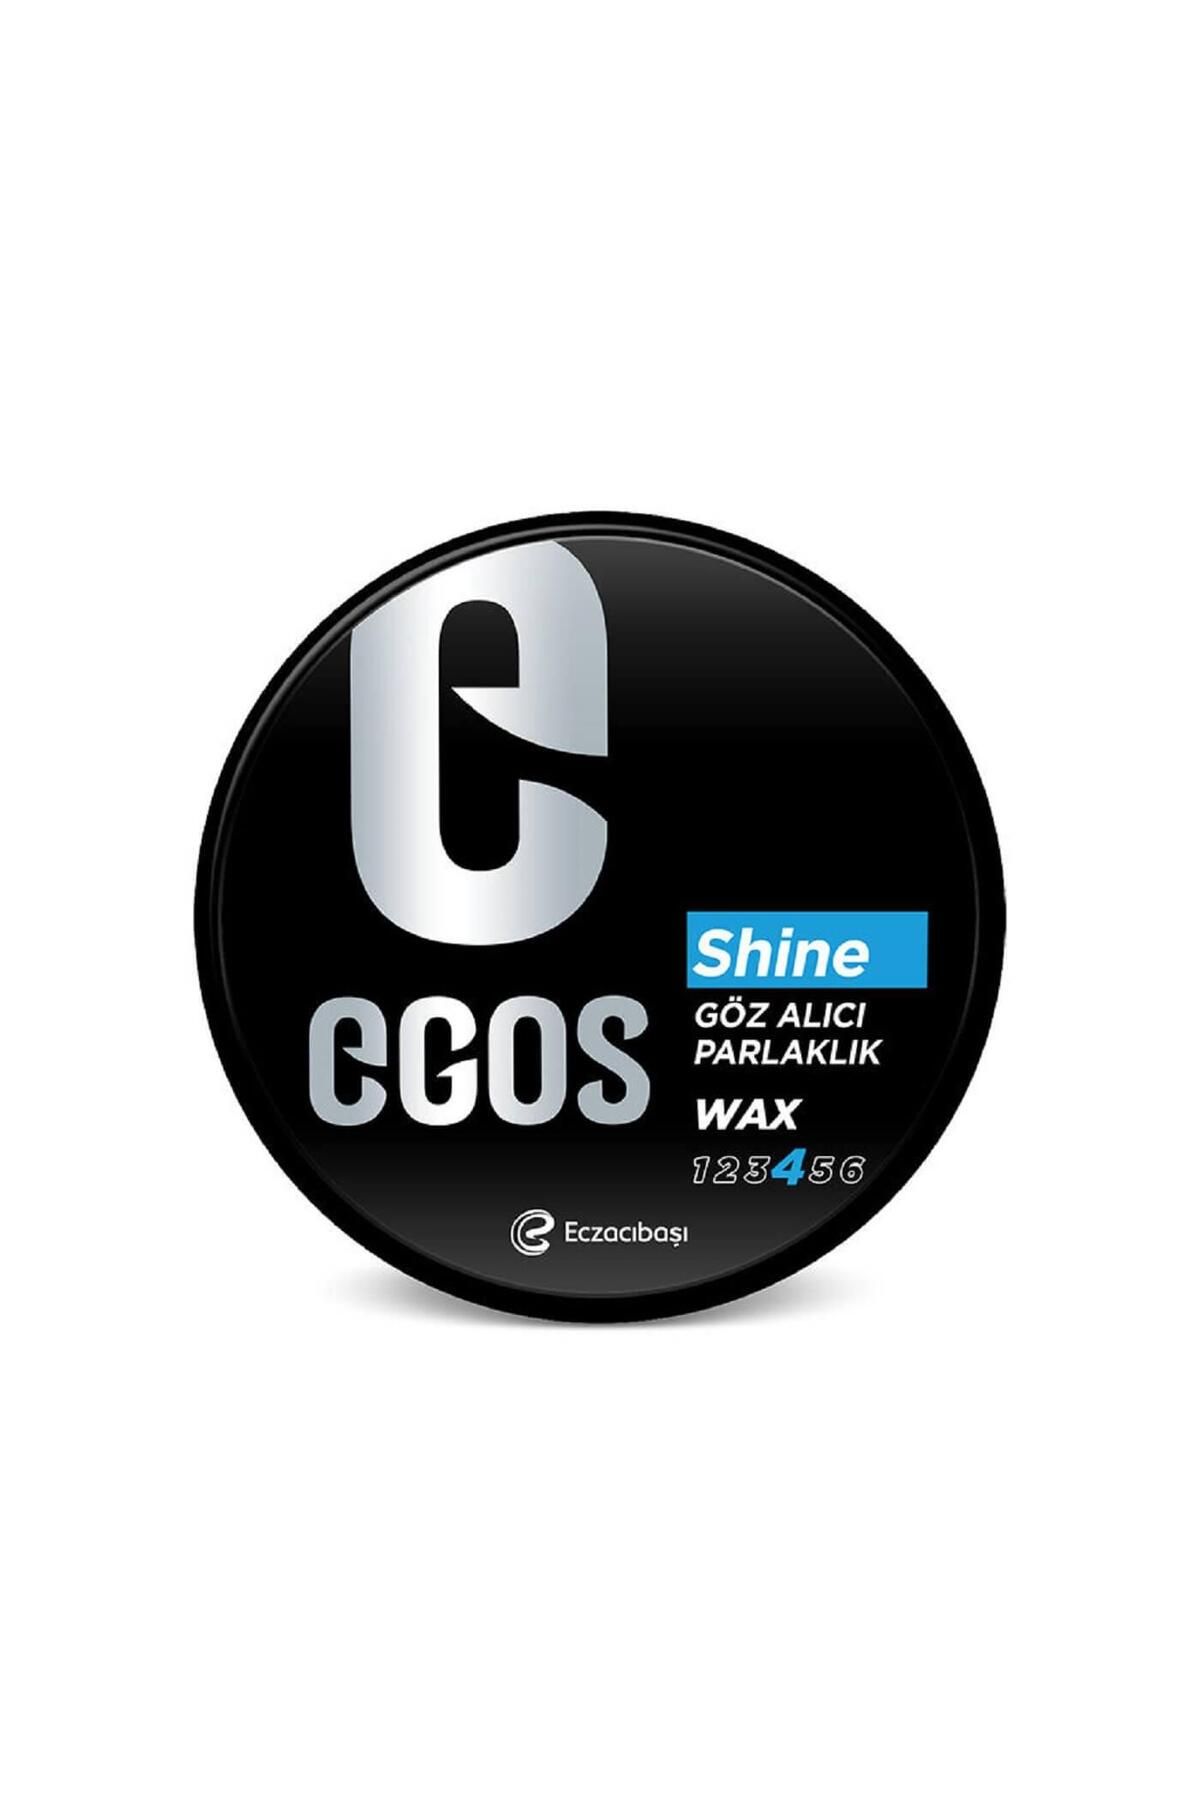 Egos Wax 100 ml Göz Alıcı Parlaklık // Shine